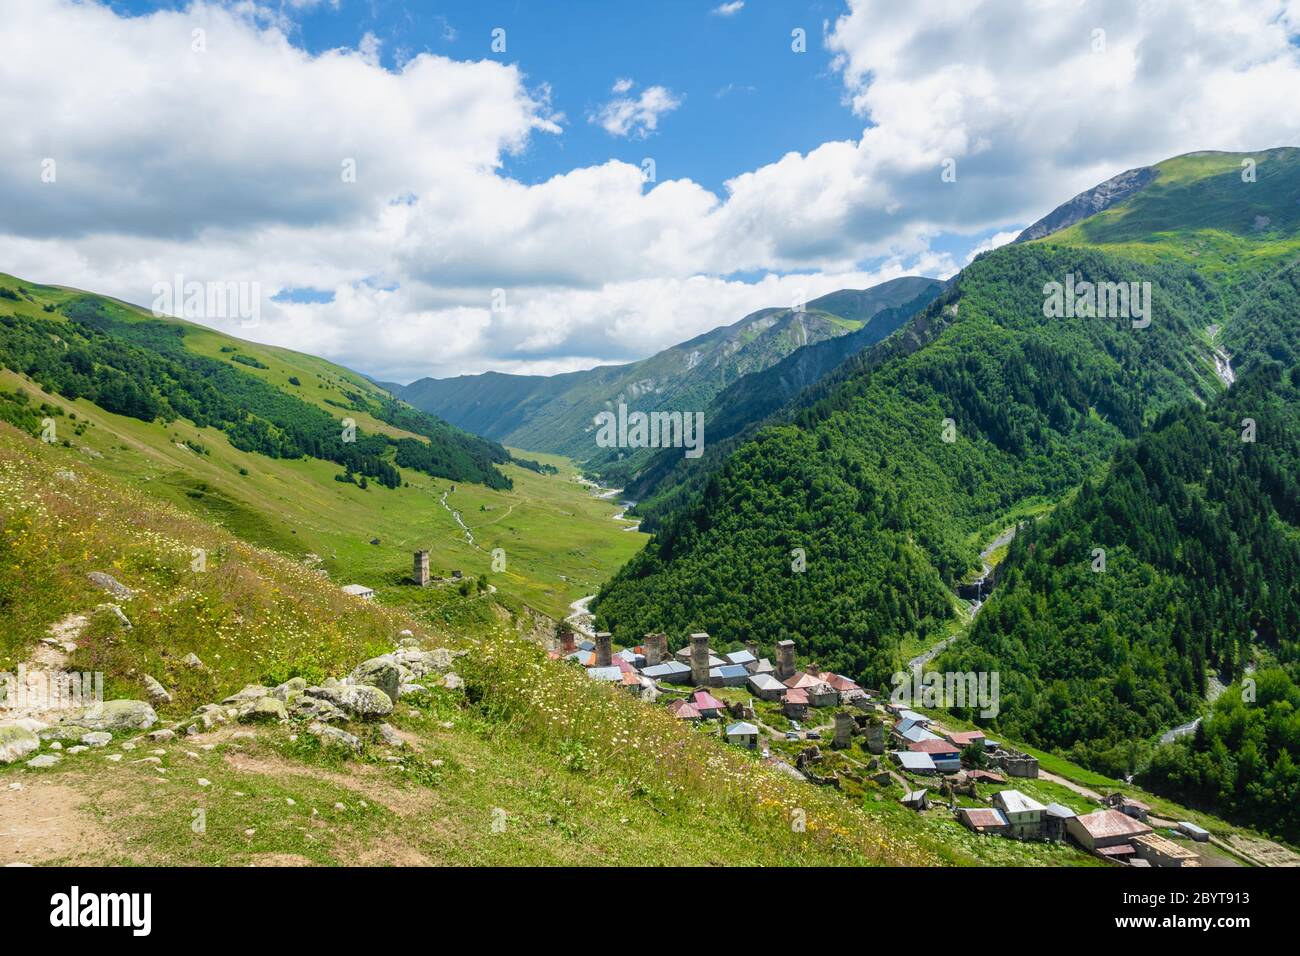 Paysage de montagne et de village de Svaneti sur la route de randonnée et de randonnée près du village de Mestia dans la région de Svaneti, patrimoine de l'UNESCO en Géorgie. Banque D'Images